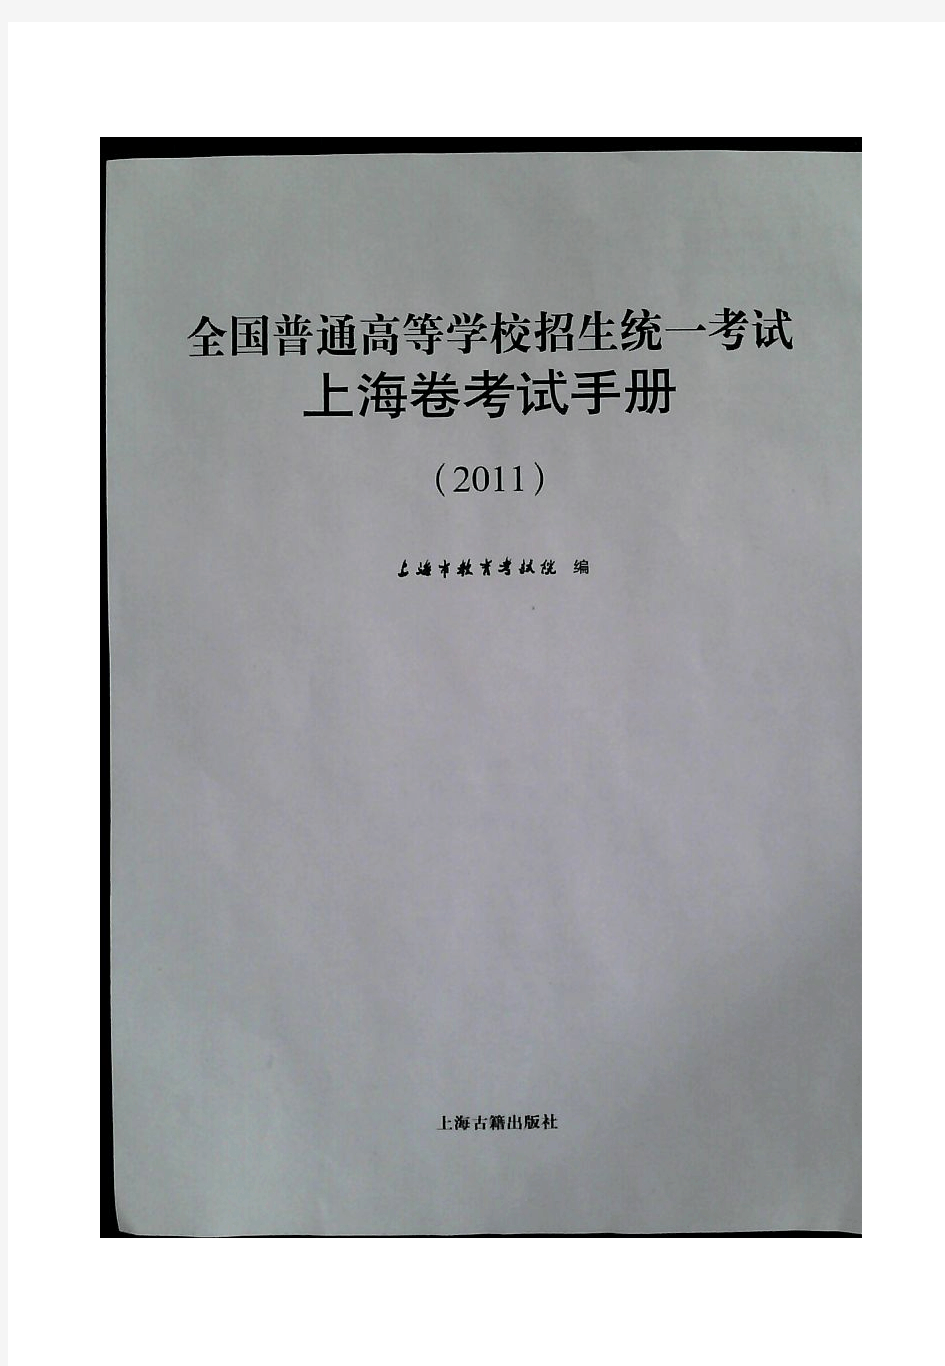 2011年上海高考考纲(完整pdf版)化学